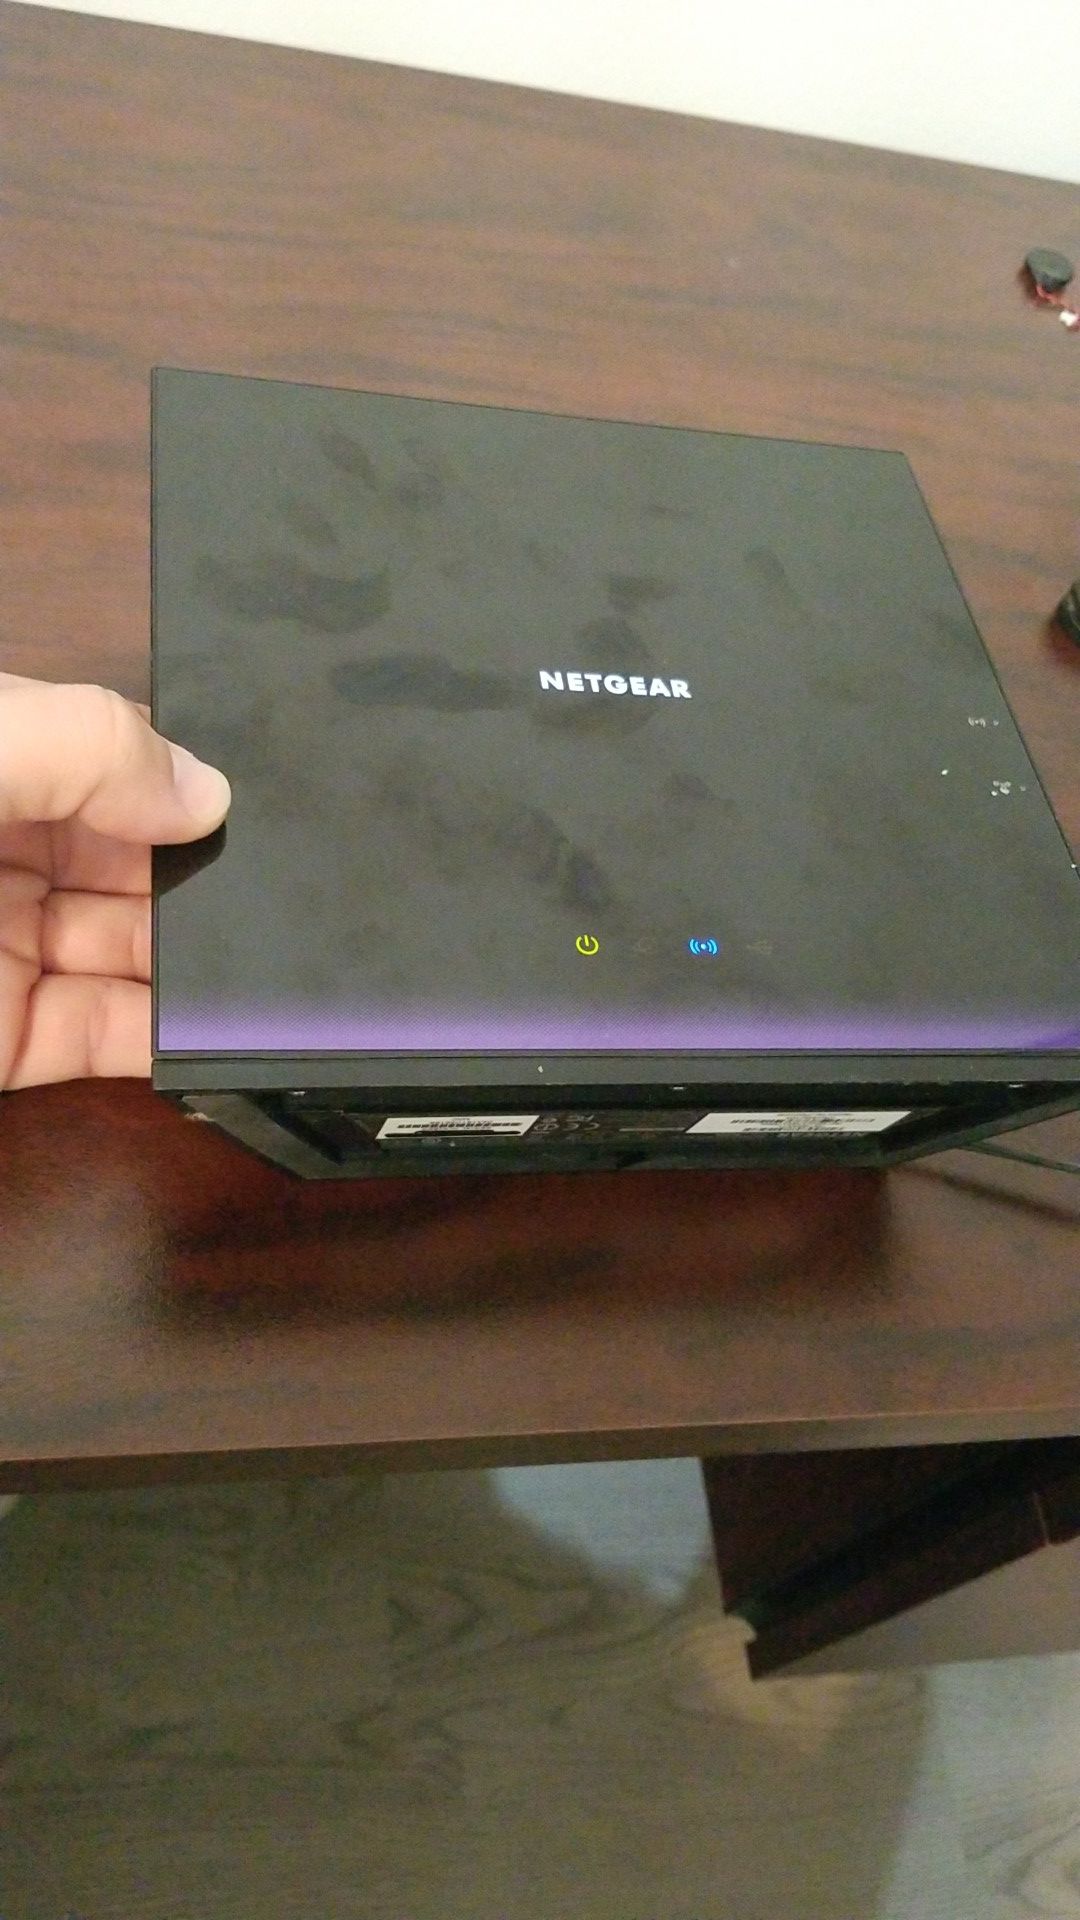 Netgear wifi router for cheap